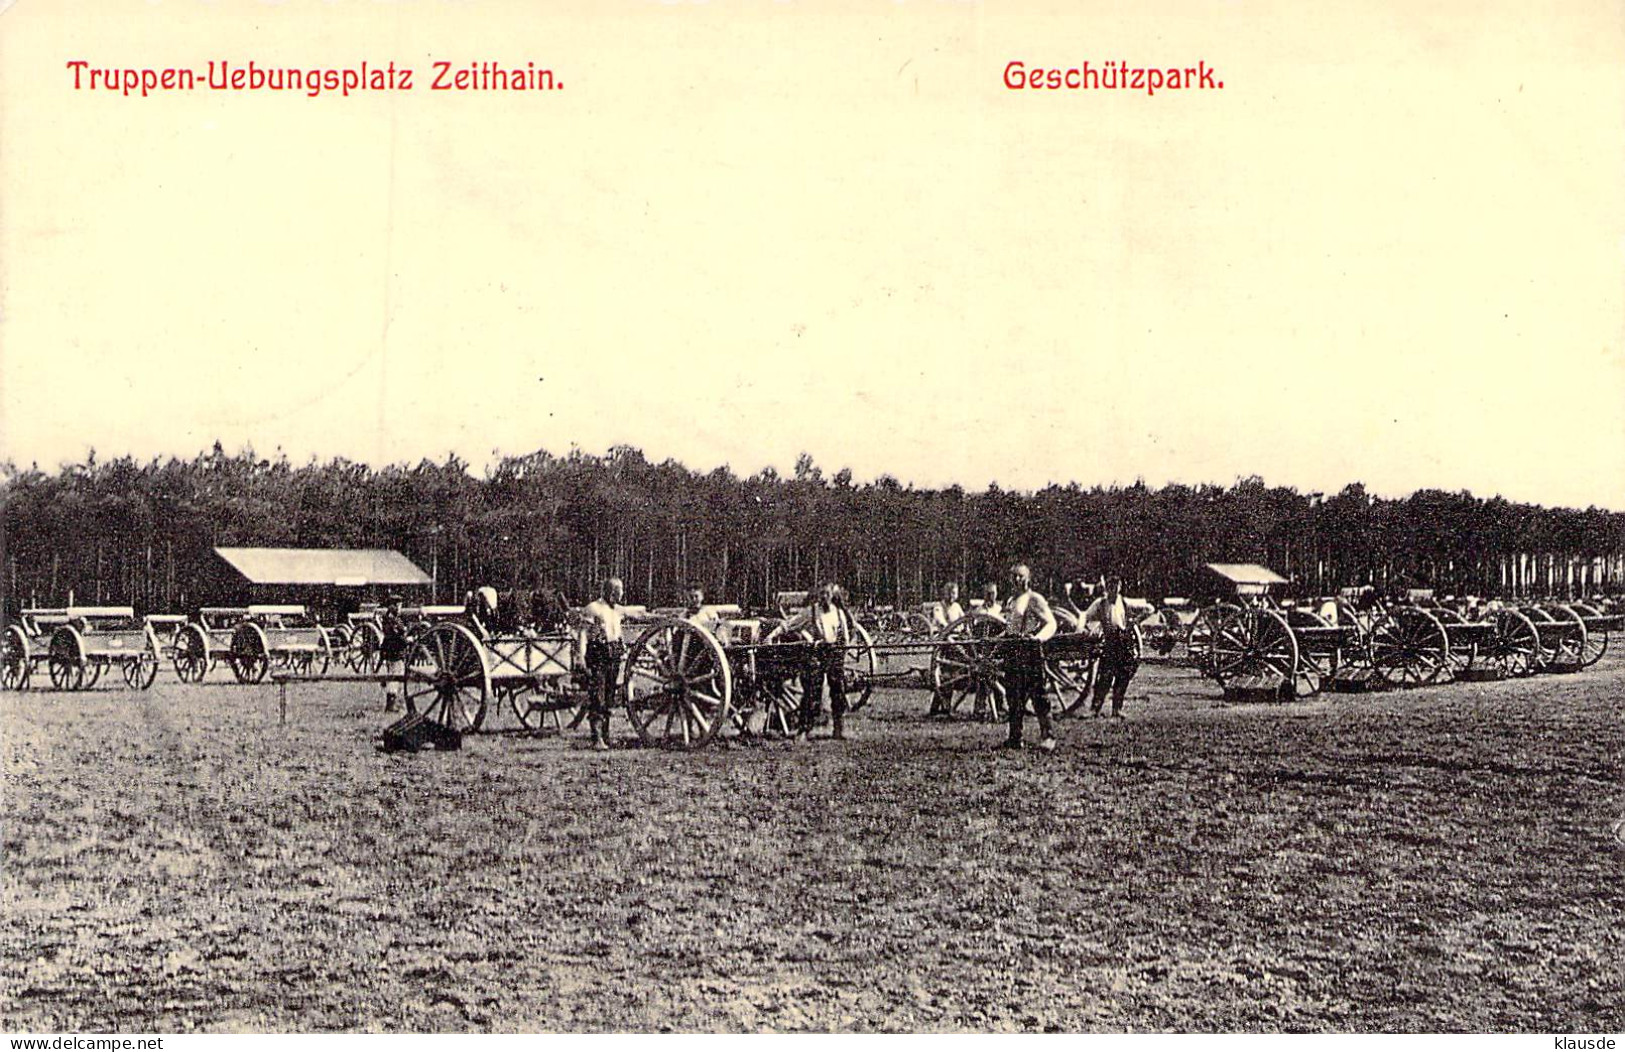 Truppen-Uebungsplatz Zeithain - Geschützpark Gel.1905 - Zeithain